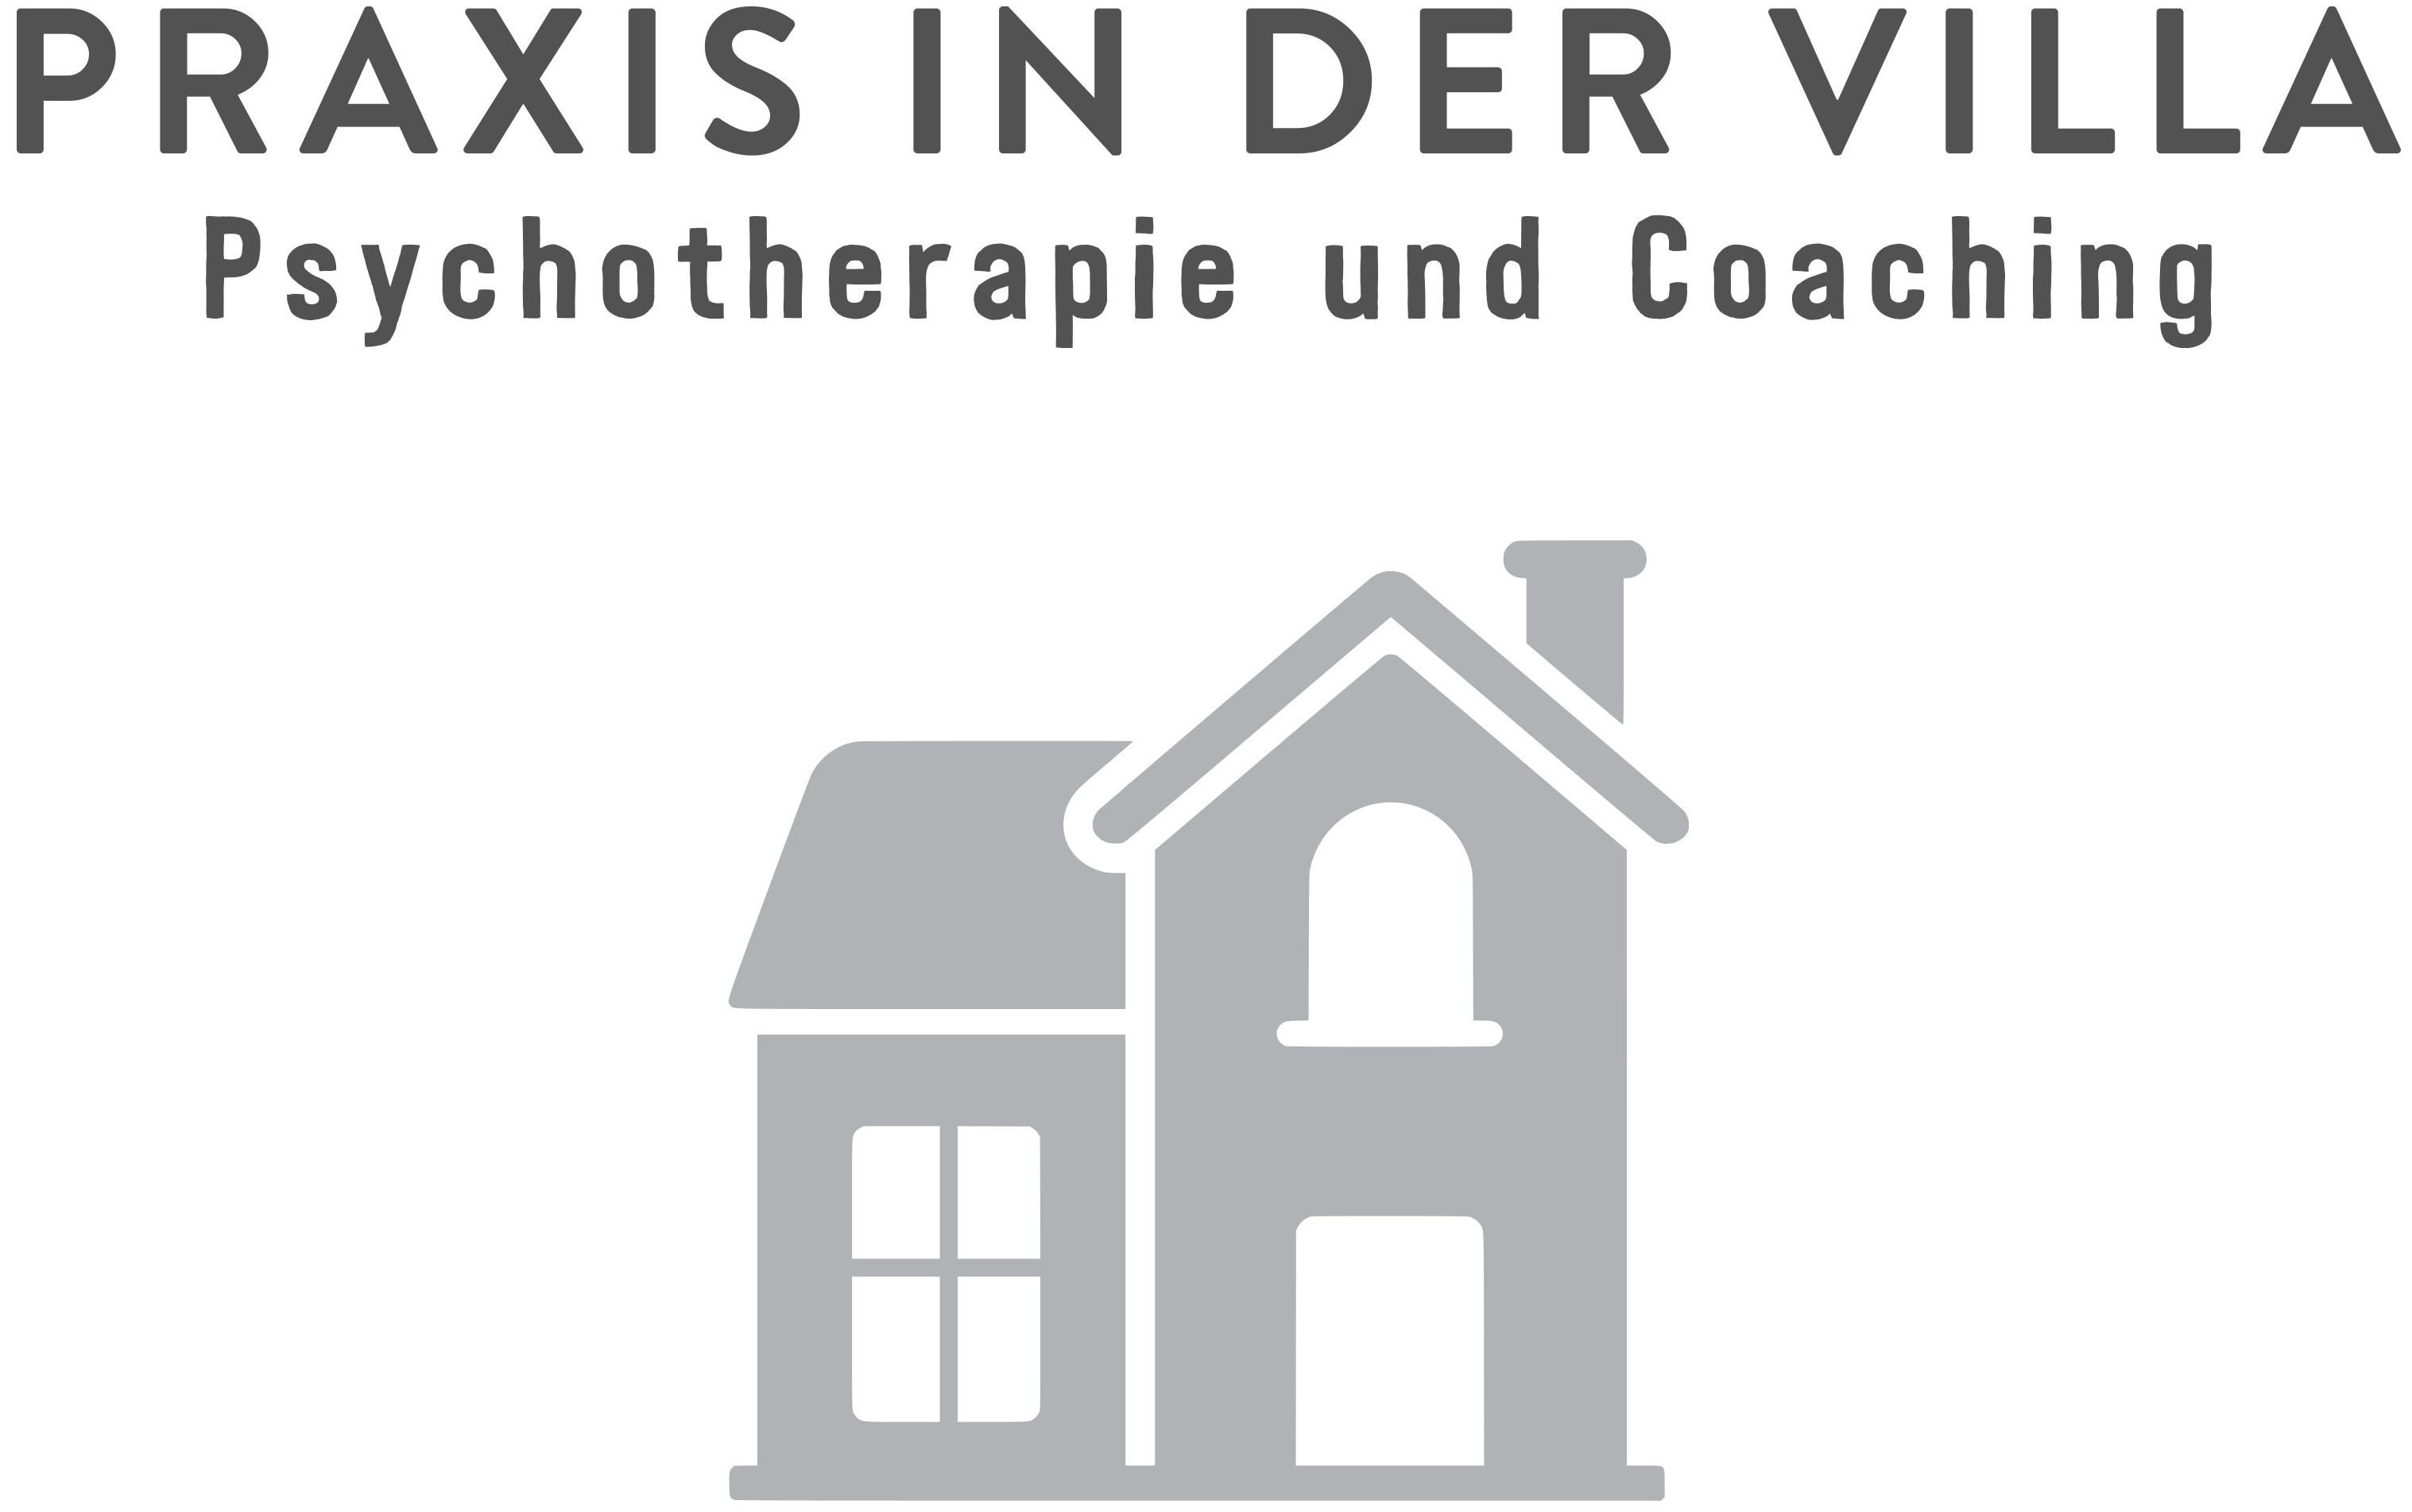 Praxis in der Villa - Psychotherapie und Coaching in Elmshorn